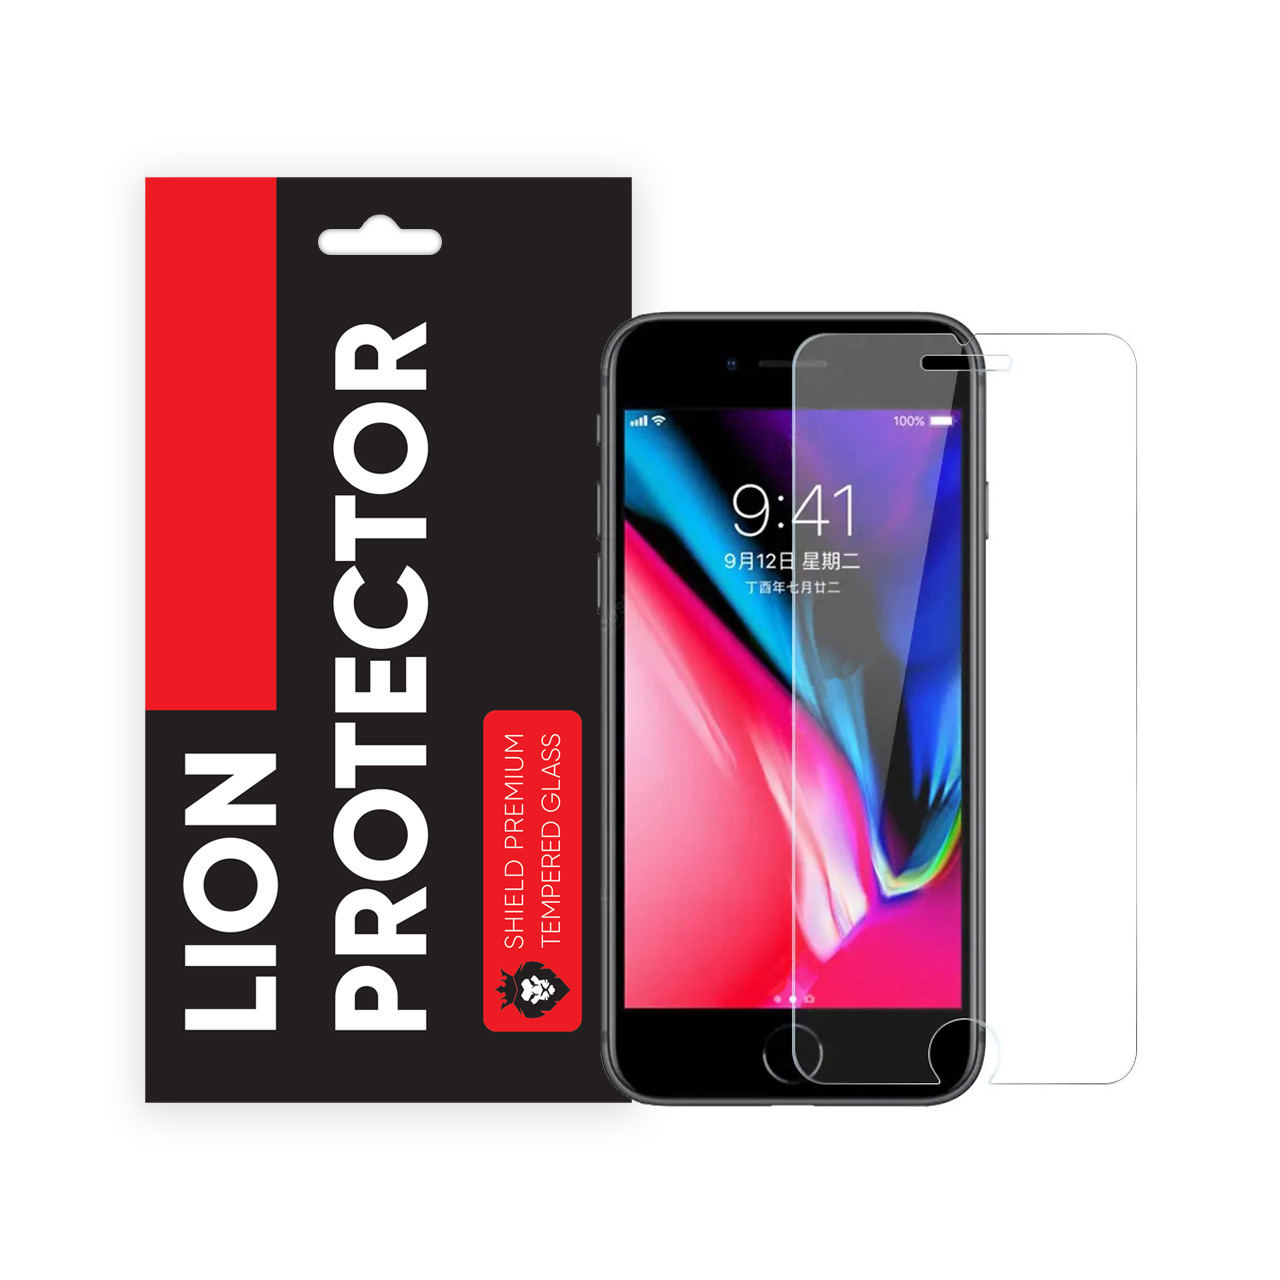  محافظ صفحه نمایش شیلد مدل Lion LGS مناسب برای گوشی موبایل اپل iPhone 8 Plus 